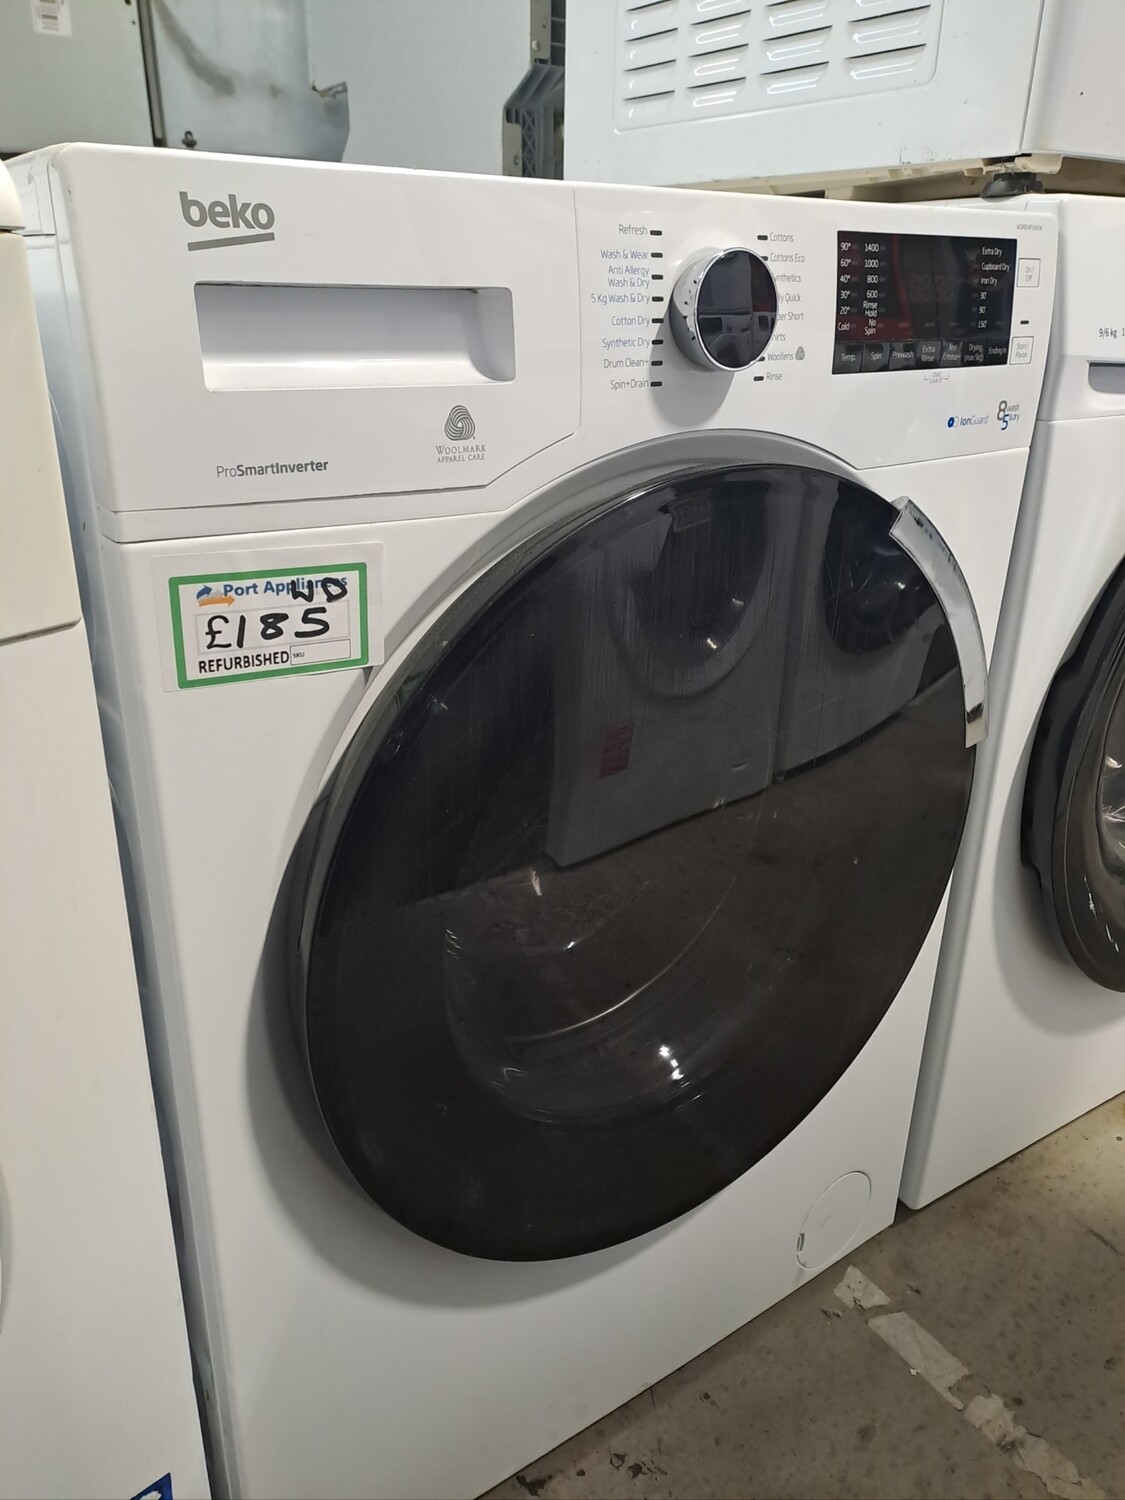 Beko WDR854P14N1W 8kg Load 1400 Spin Washing Machine Washer Dryer - White - Refurbished - 6 Month Guarantee